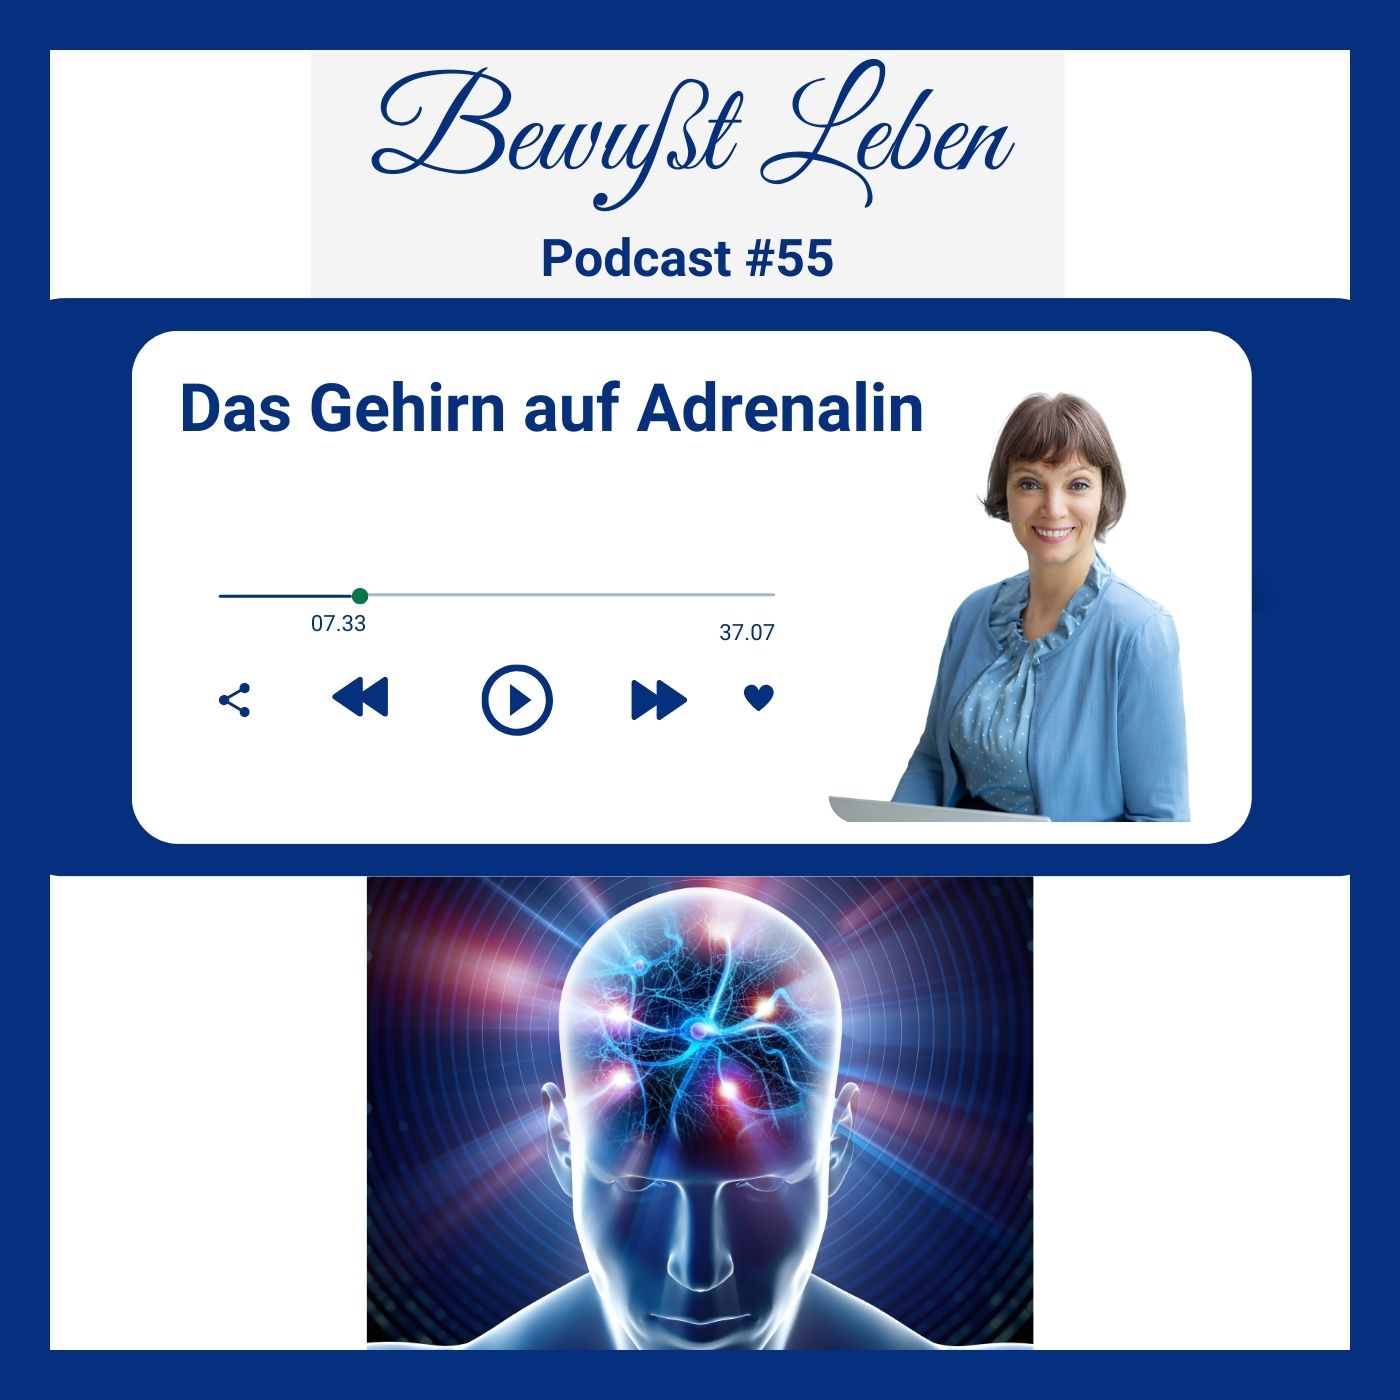 Das Gehirn auf Adrenalin I Podcast #55